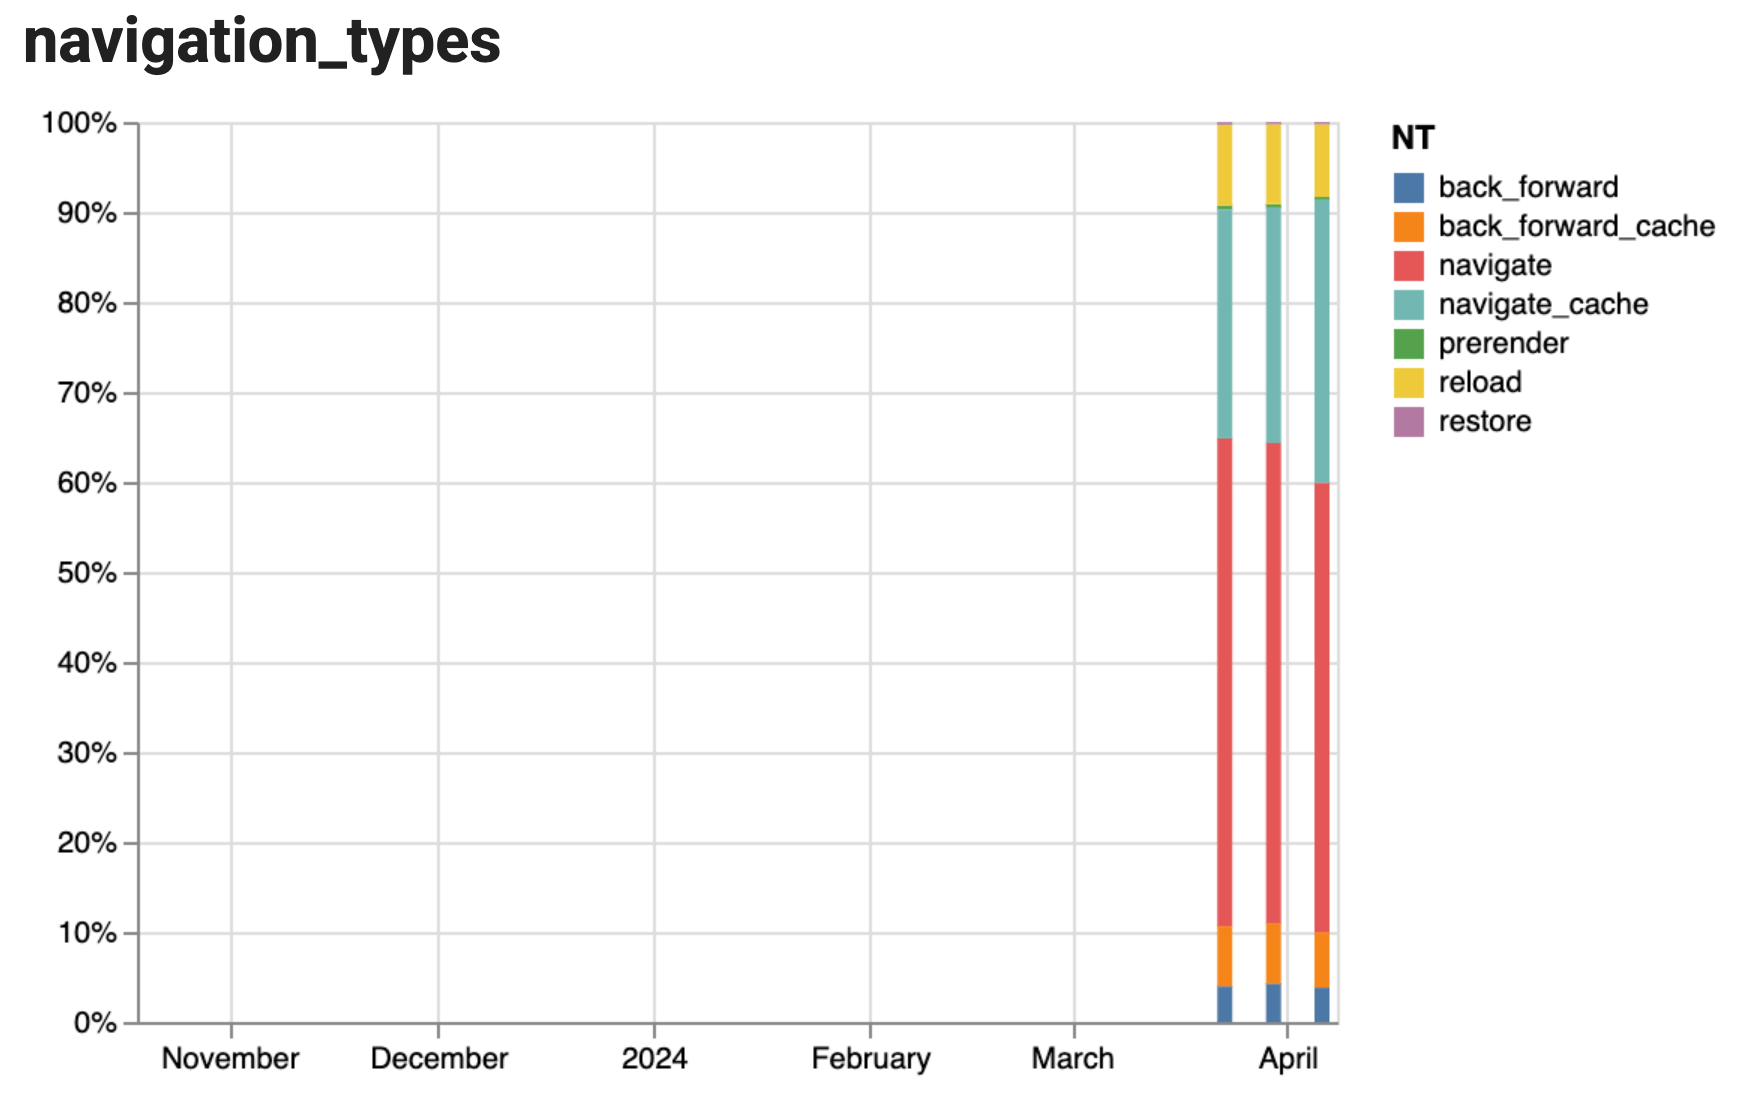 Skumulowany wykres słupkowy przedstawiający historię typów nawigacji na przestrzeni 3 tygodni, przy czym większość nawigacji jest typu „nawigacja”, bez większych zmian w ciągu 3 tygodni.